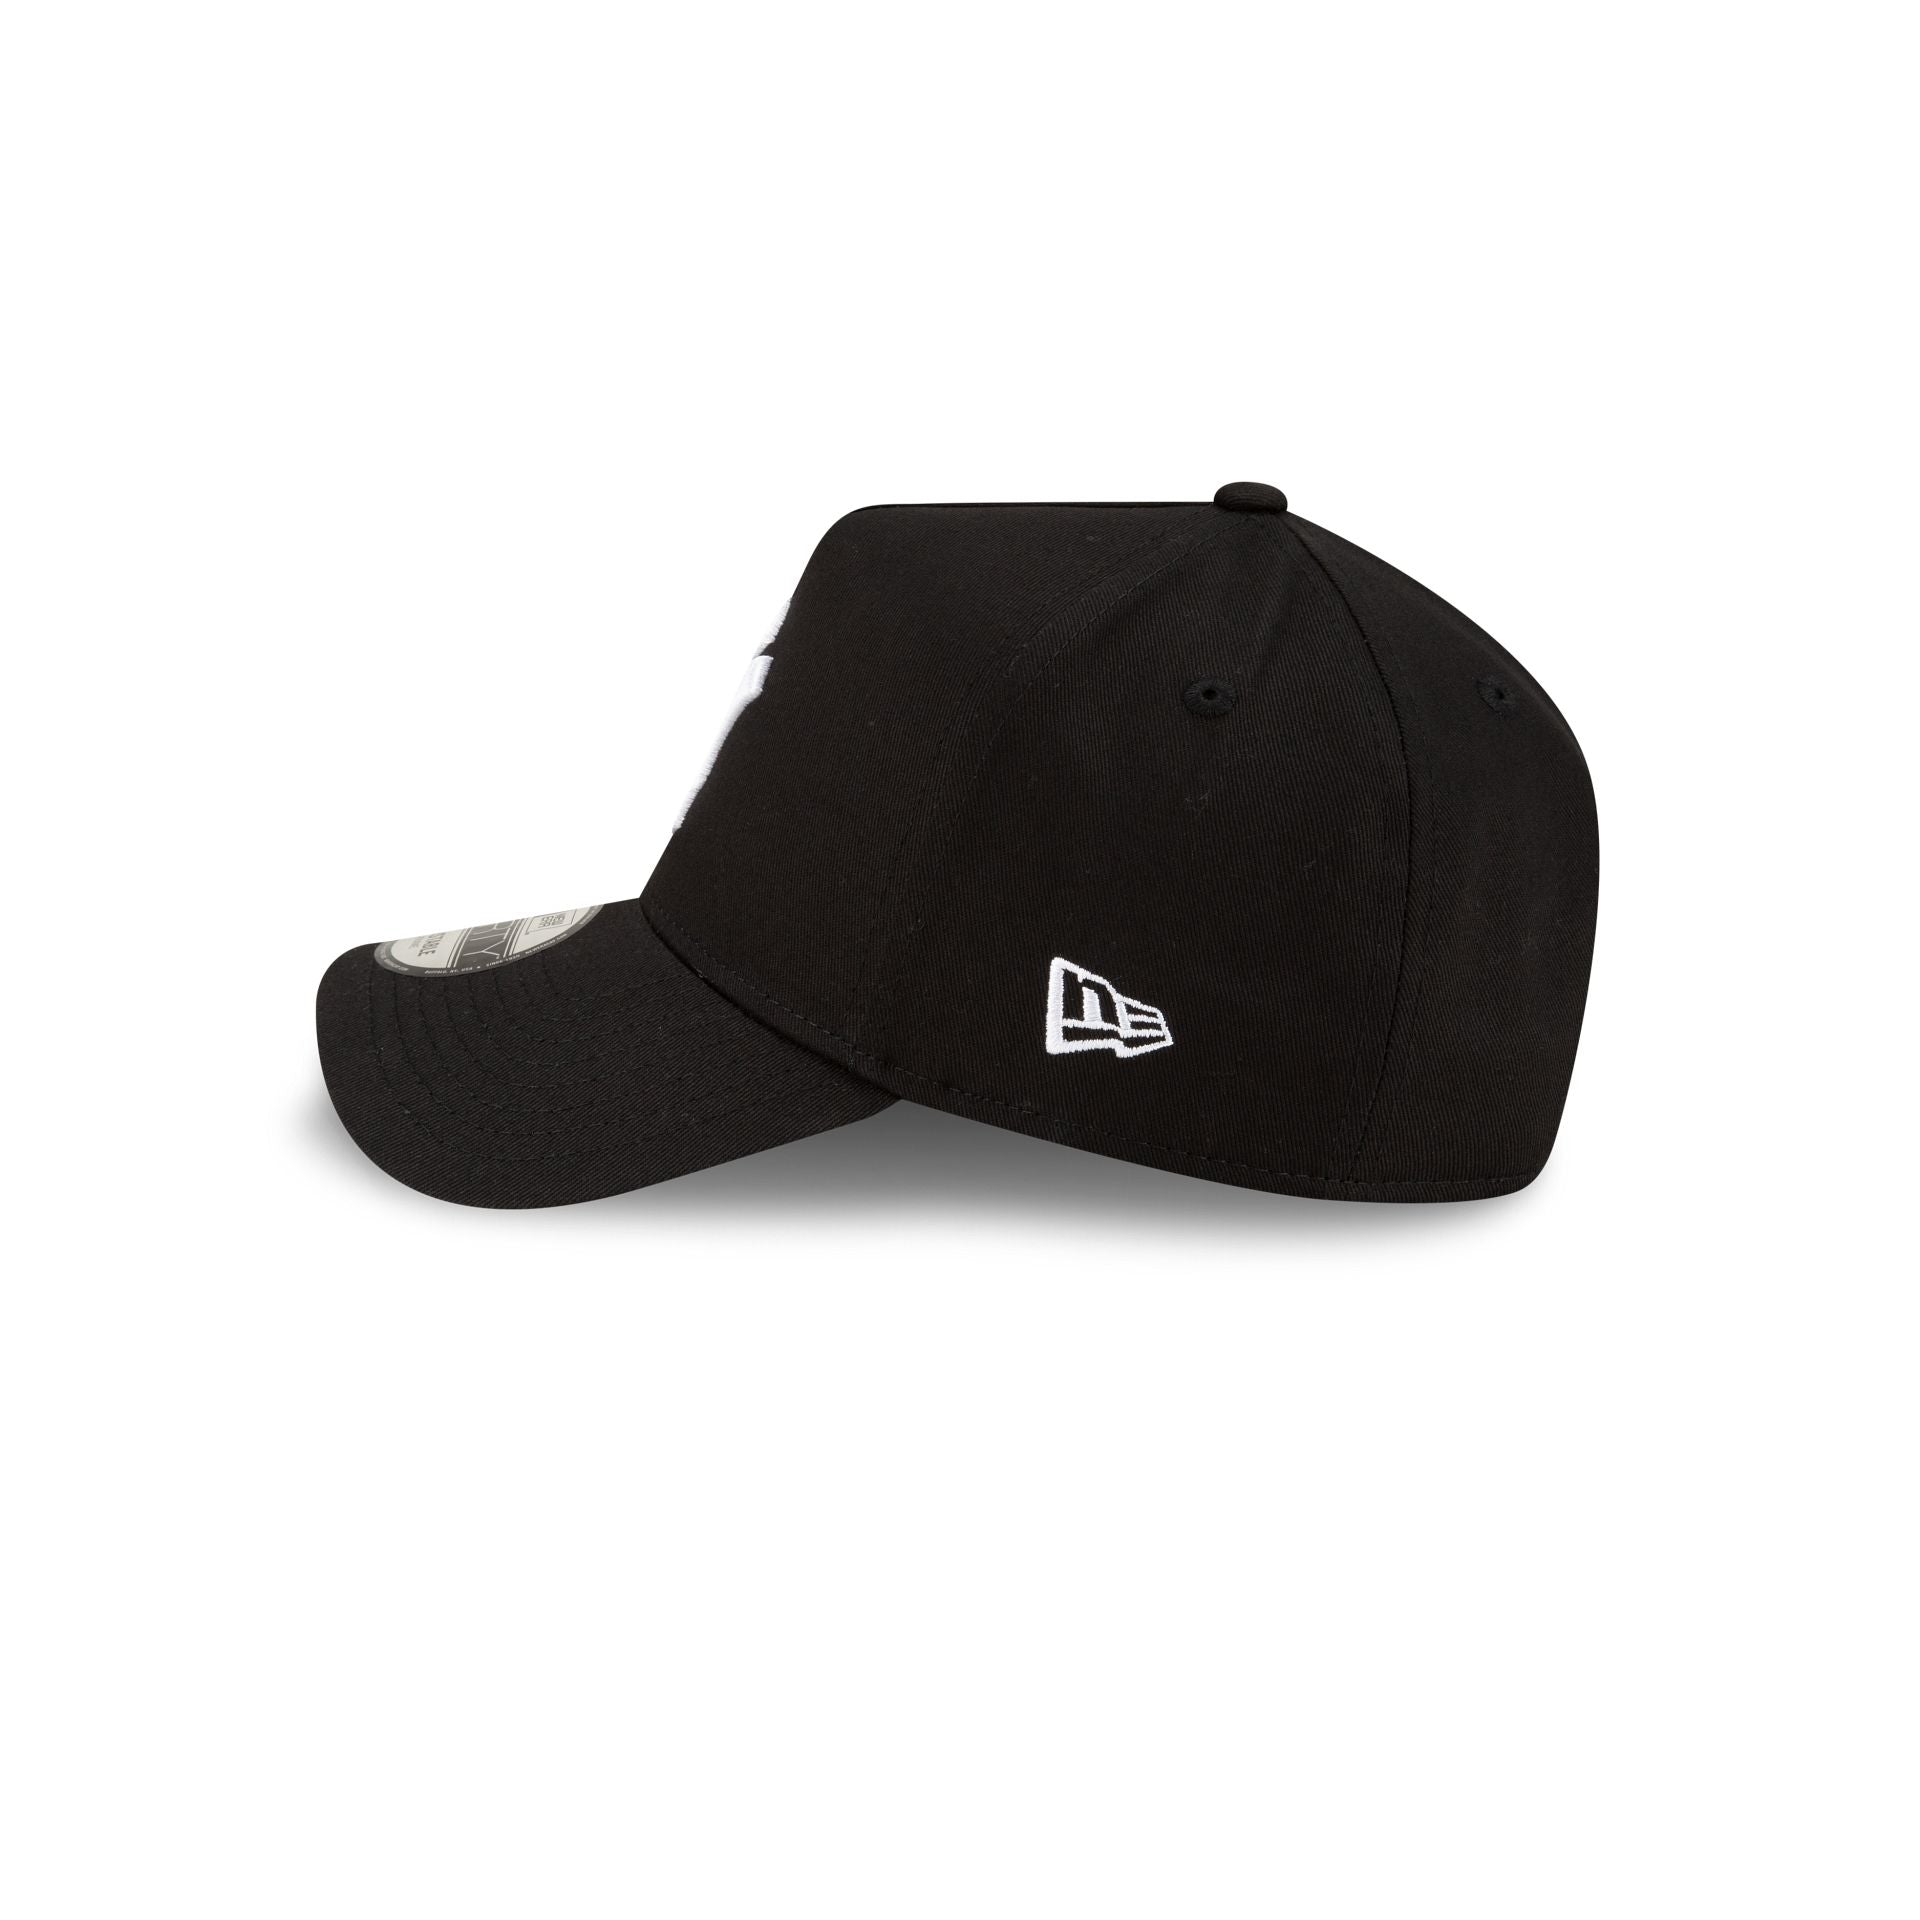 New York Yankees Color Flip Black 9FORTY A-Frame Snapback Hat